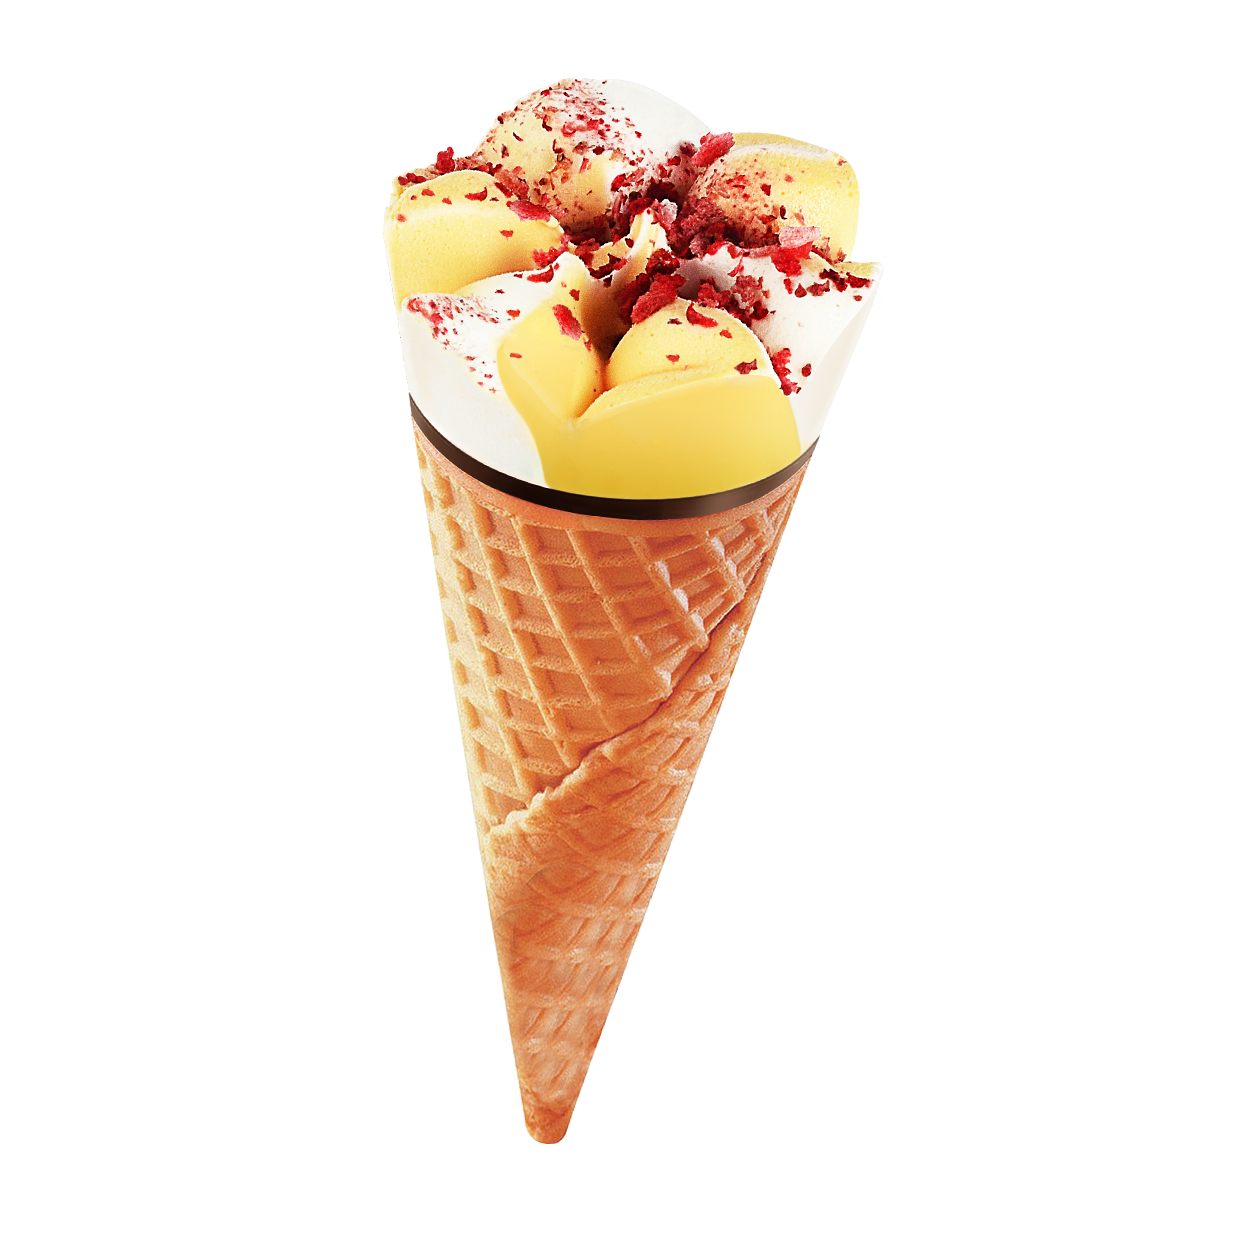 可愛卡通甜筒冰淇淋PSD圖案素材免費下載 - 尺寸2048 × 2048px - 圖形ID401251554 - Lovepik